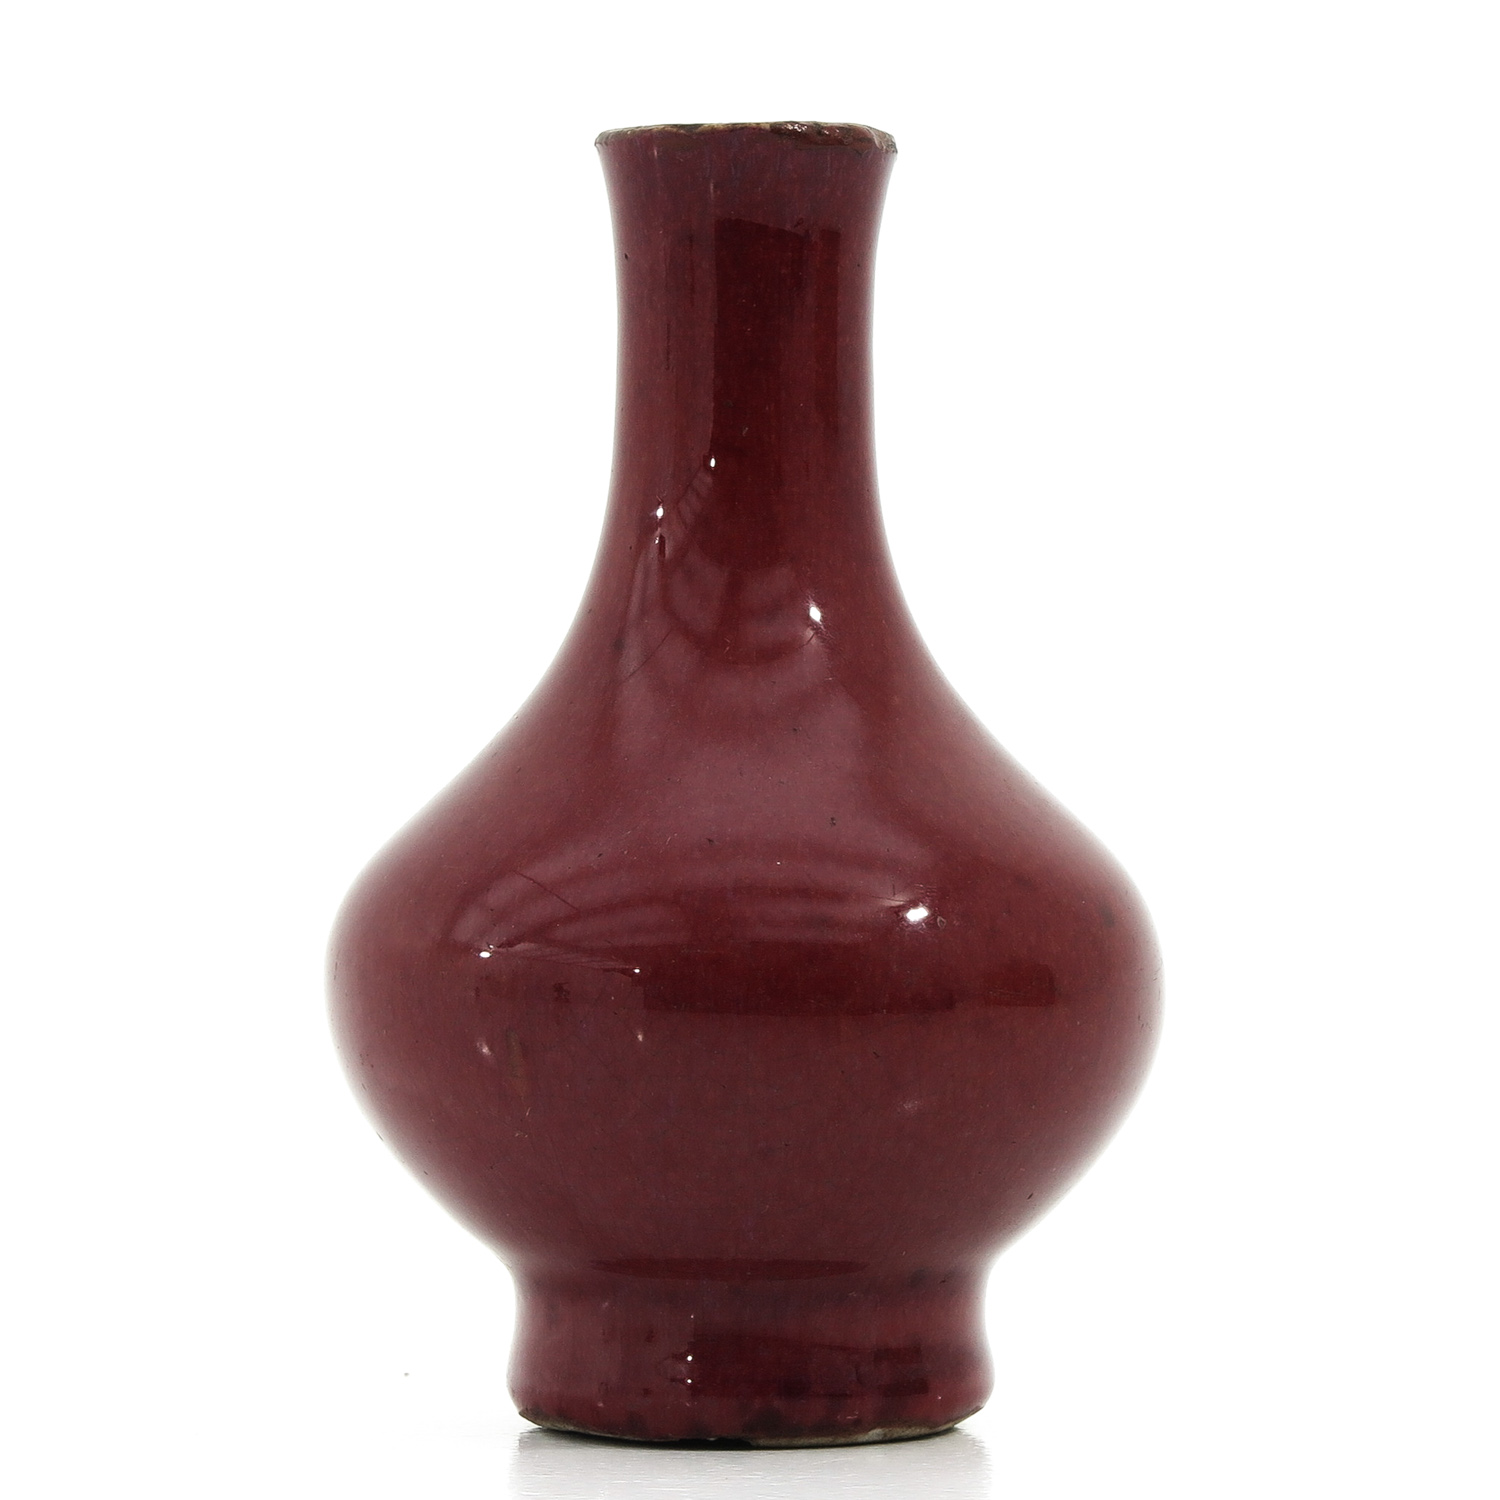 A Small Sang de Boeuf Vase - Image 3 of 9